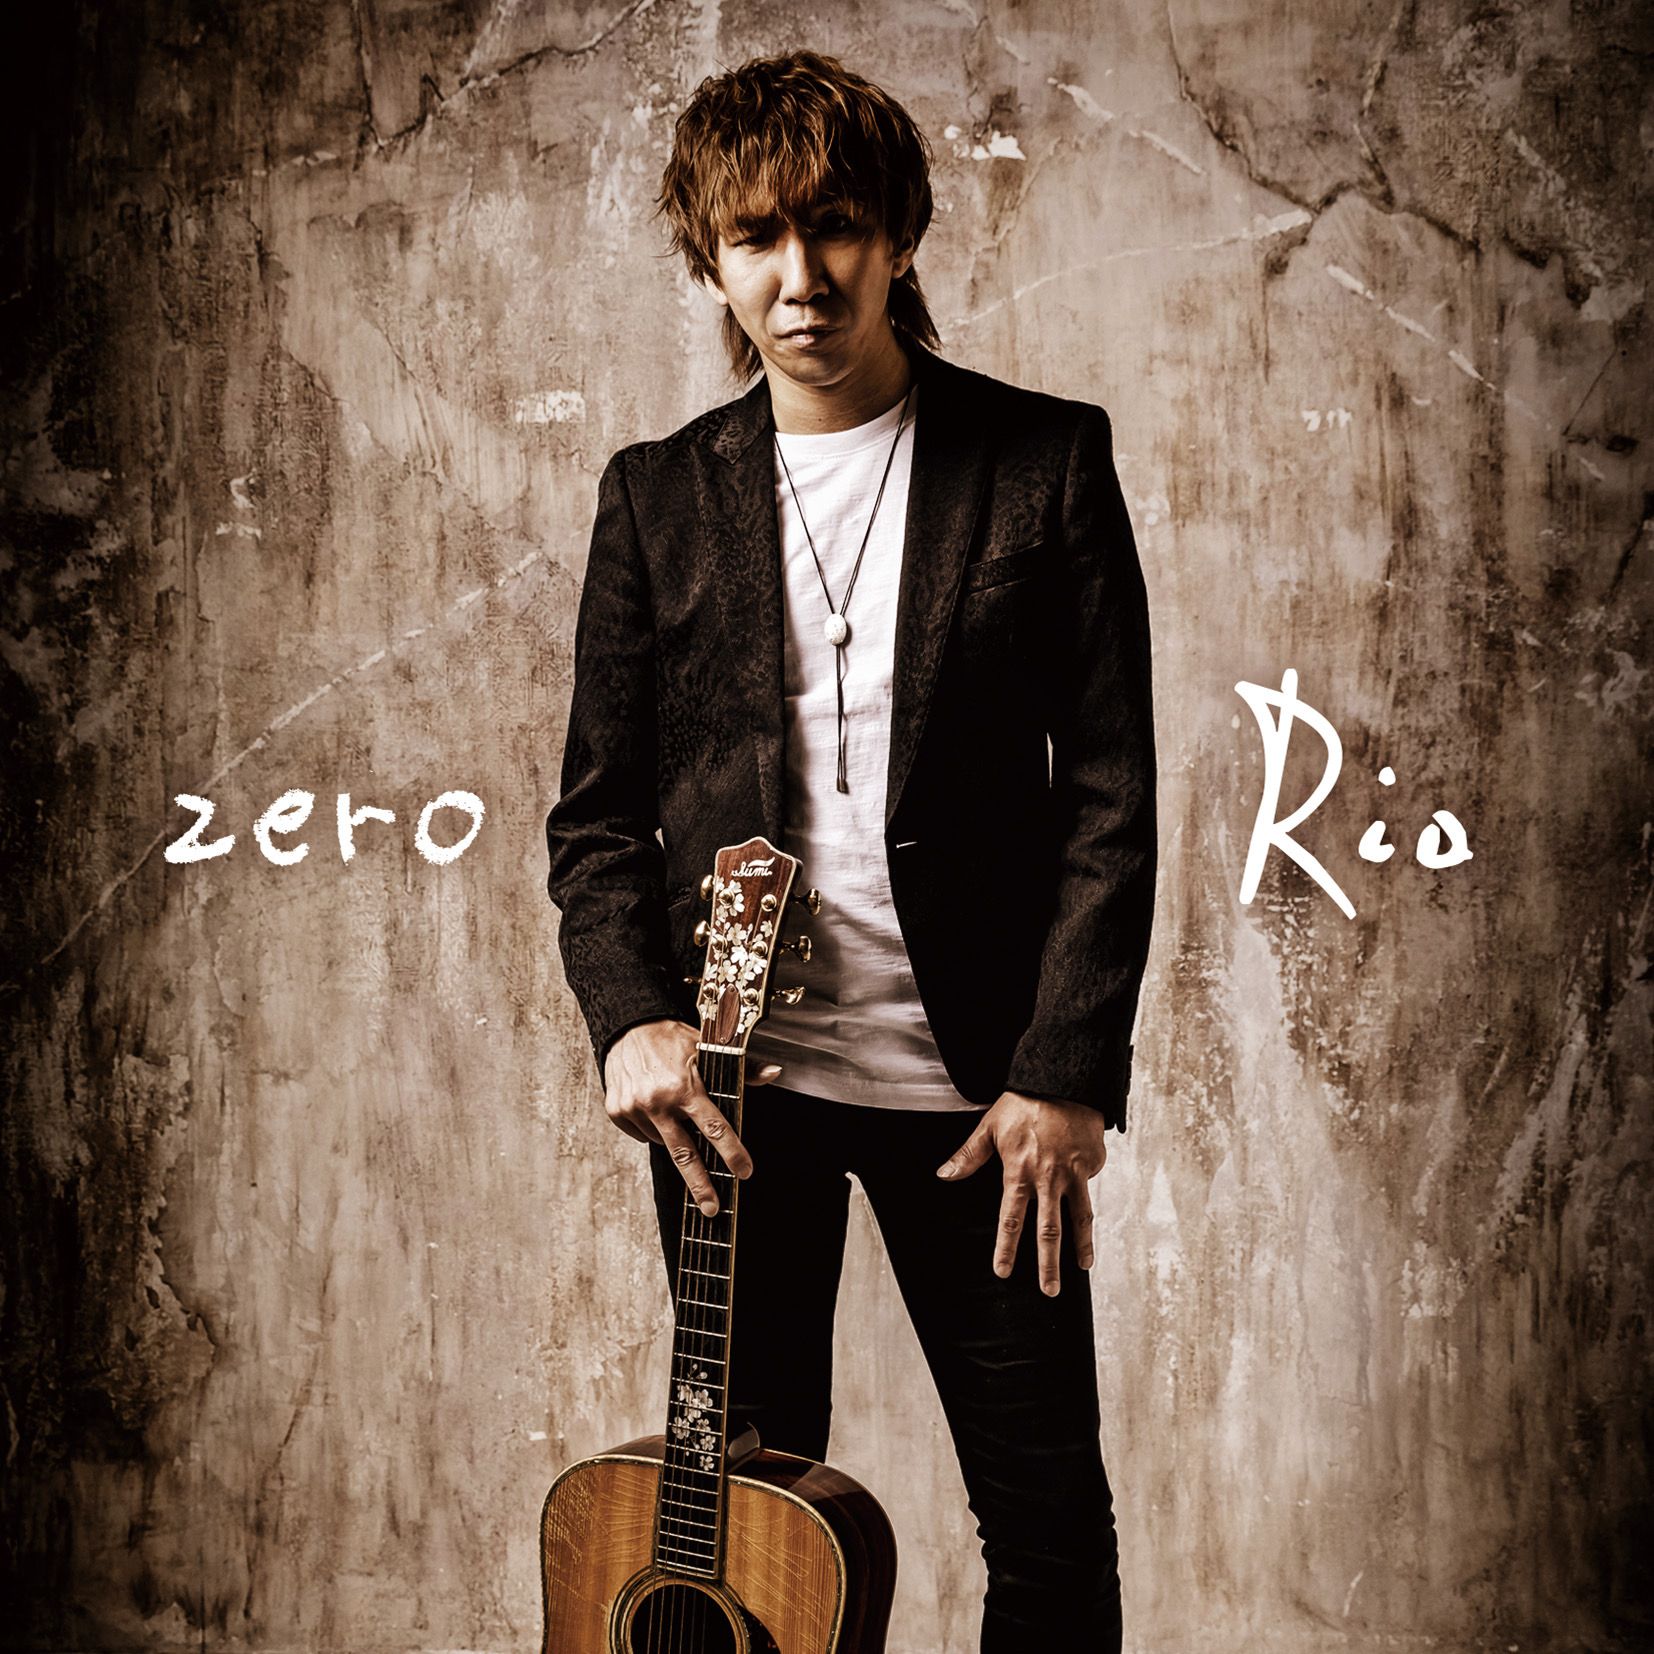 Rio zero